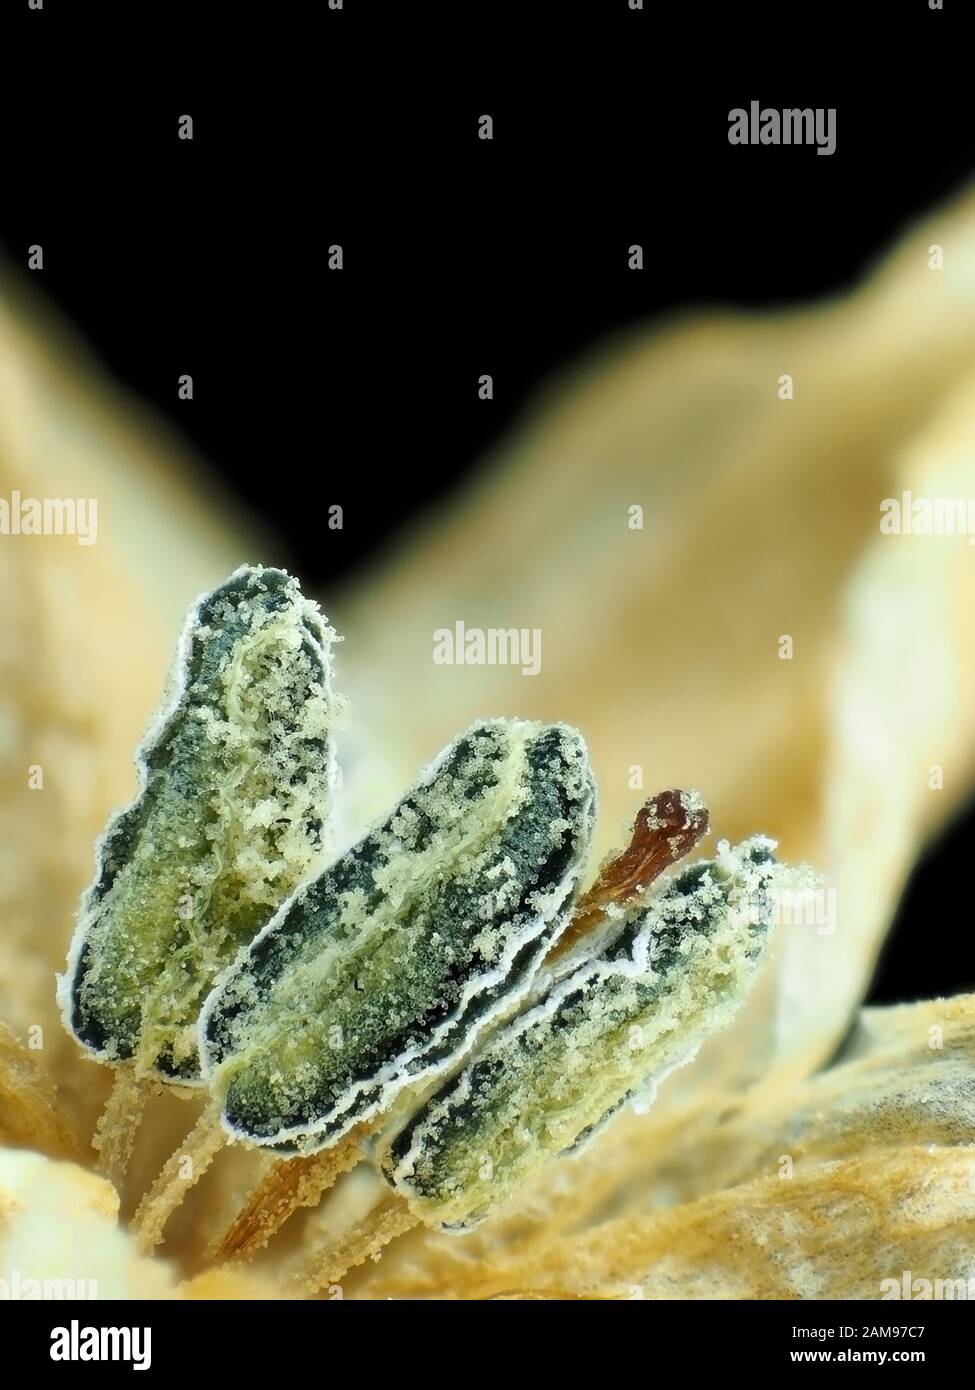 Extreme Makro Foto (Aufnahme) von Hot Chili Pepper Blume (Capsicum annuum), Stempel und Staubgefäße mit Pollen Stockfoto